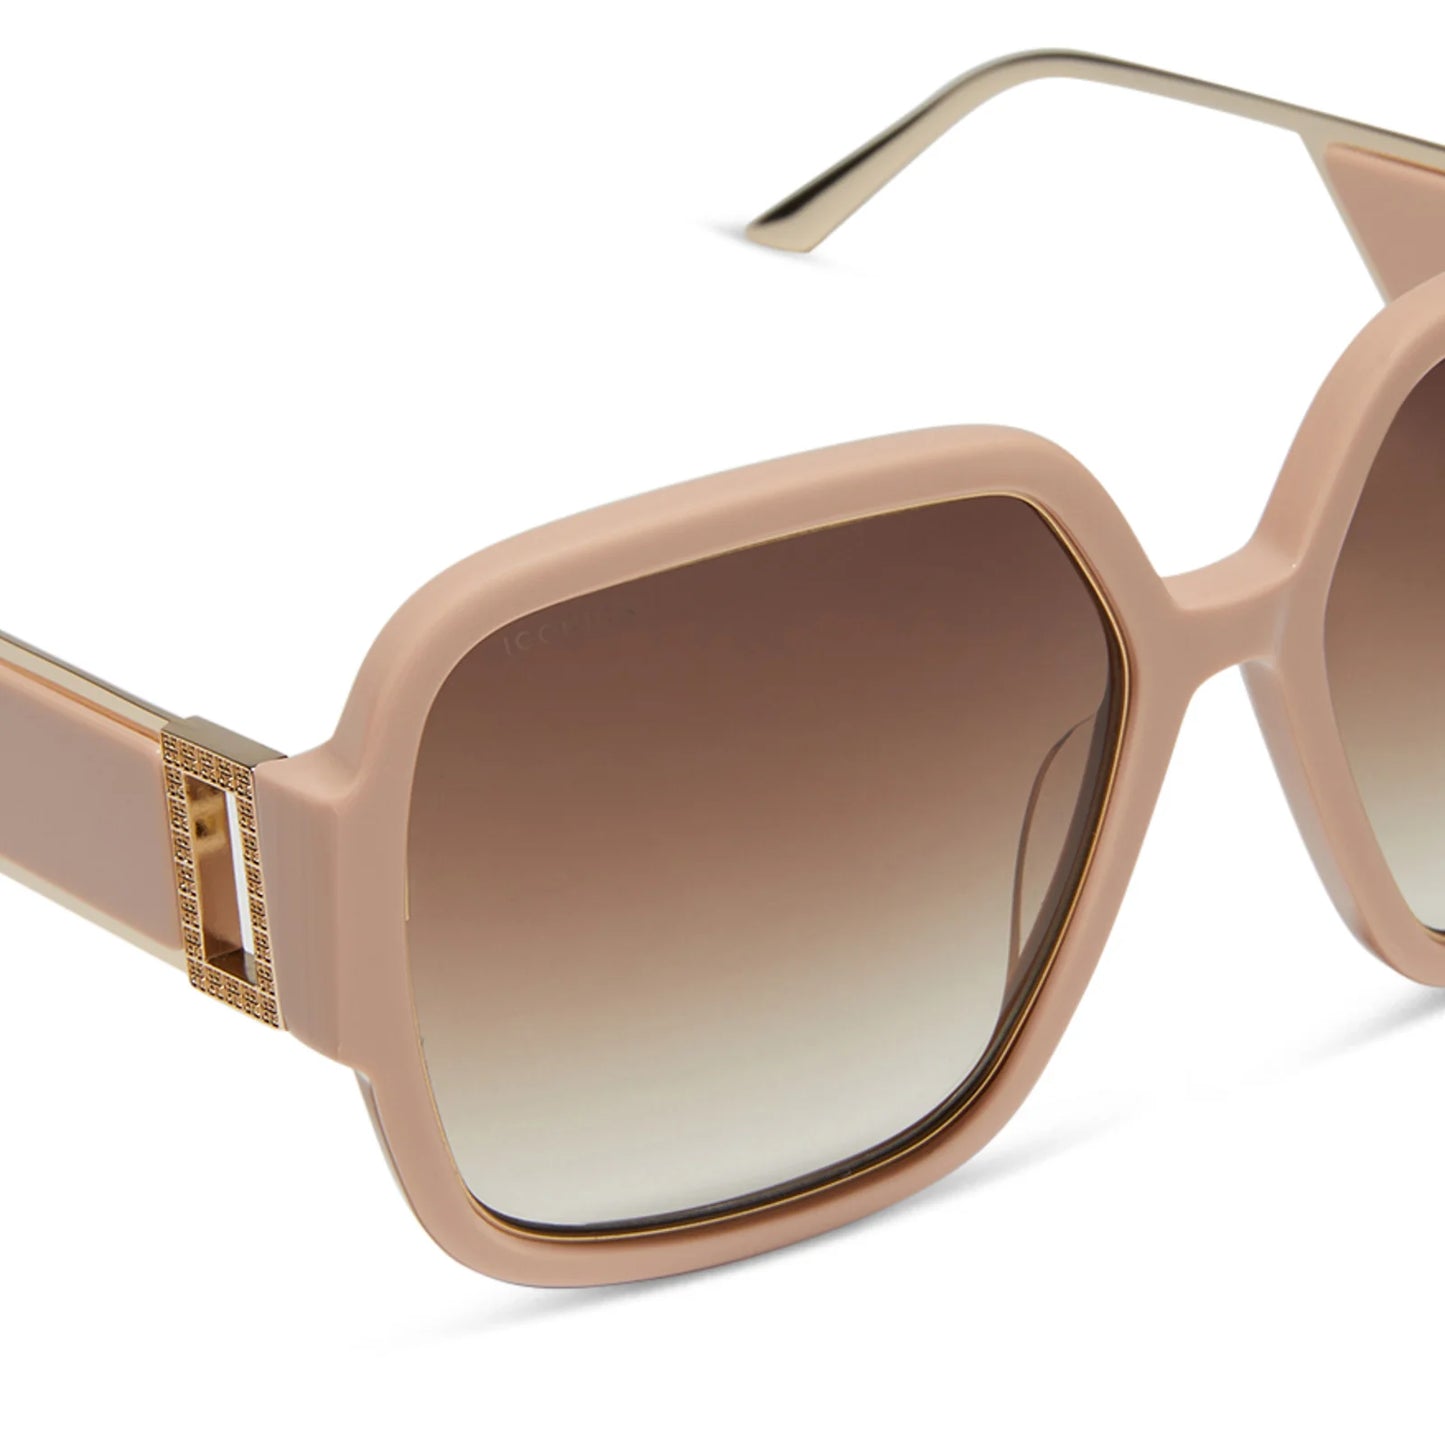 DIFF Eyewear - Tina II - Nude Brown Gradient Polarized Sunglasses